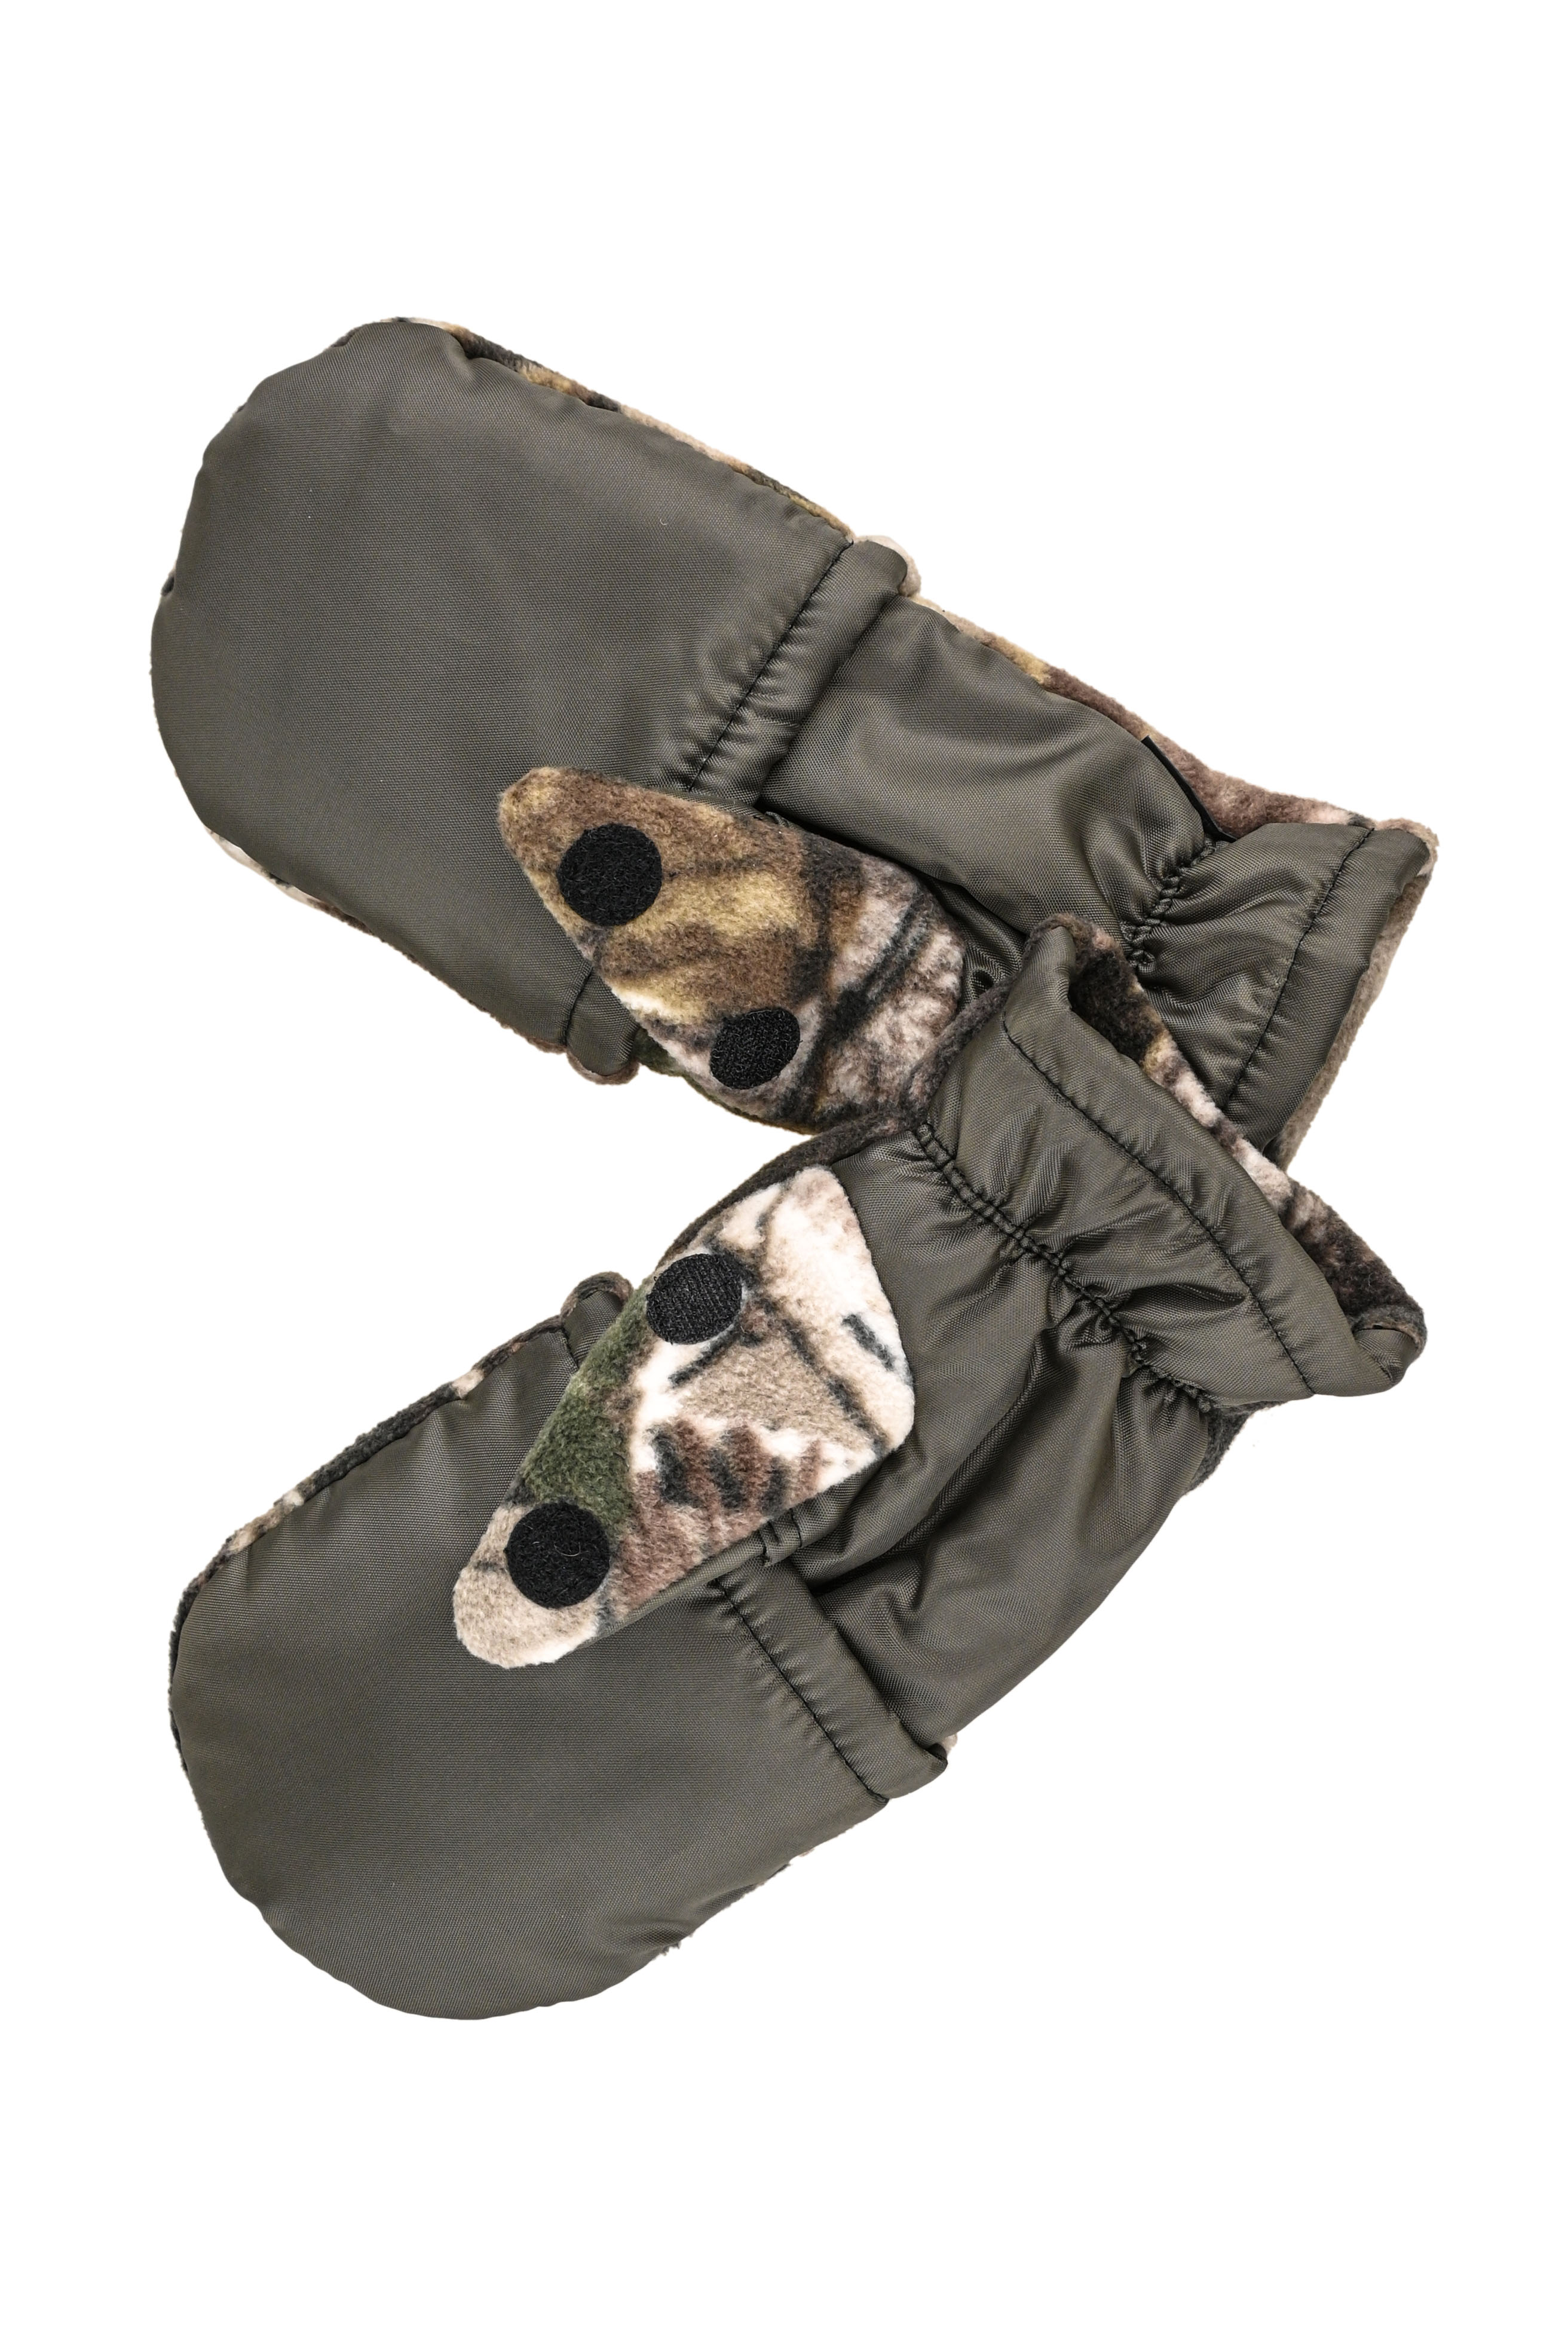 Перчатки Хольстер охотника-рыбака утепленные темный лес флис